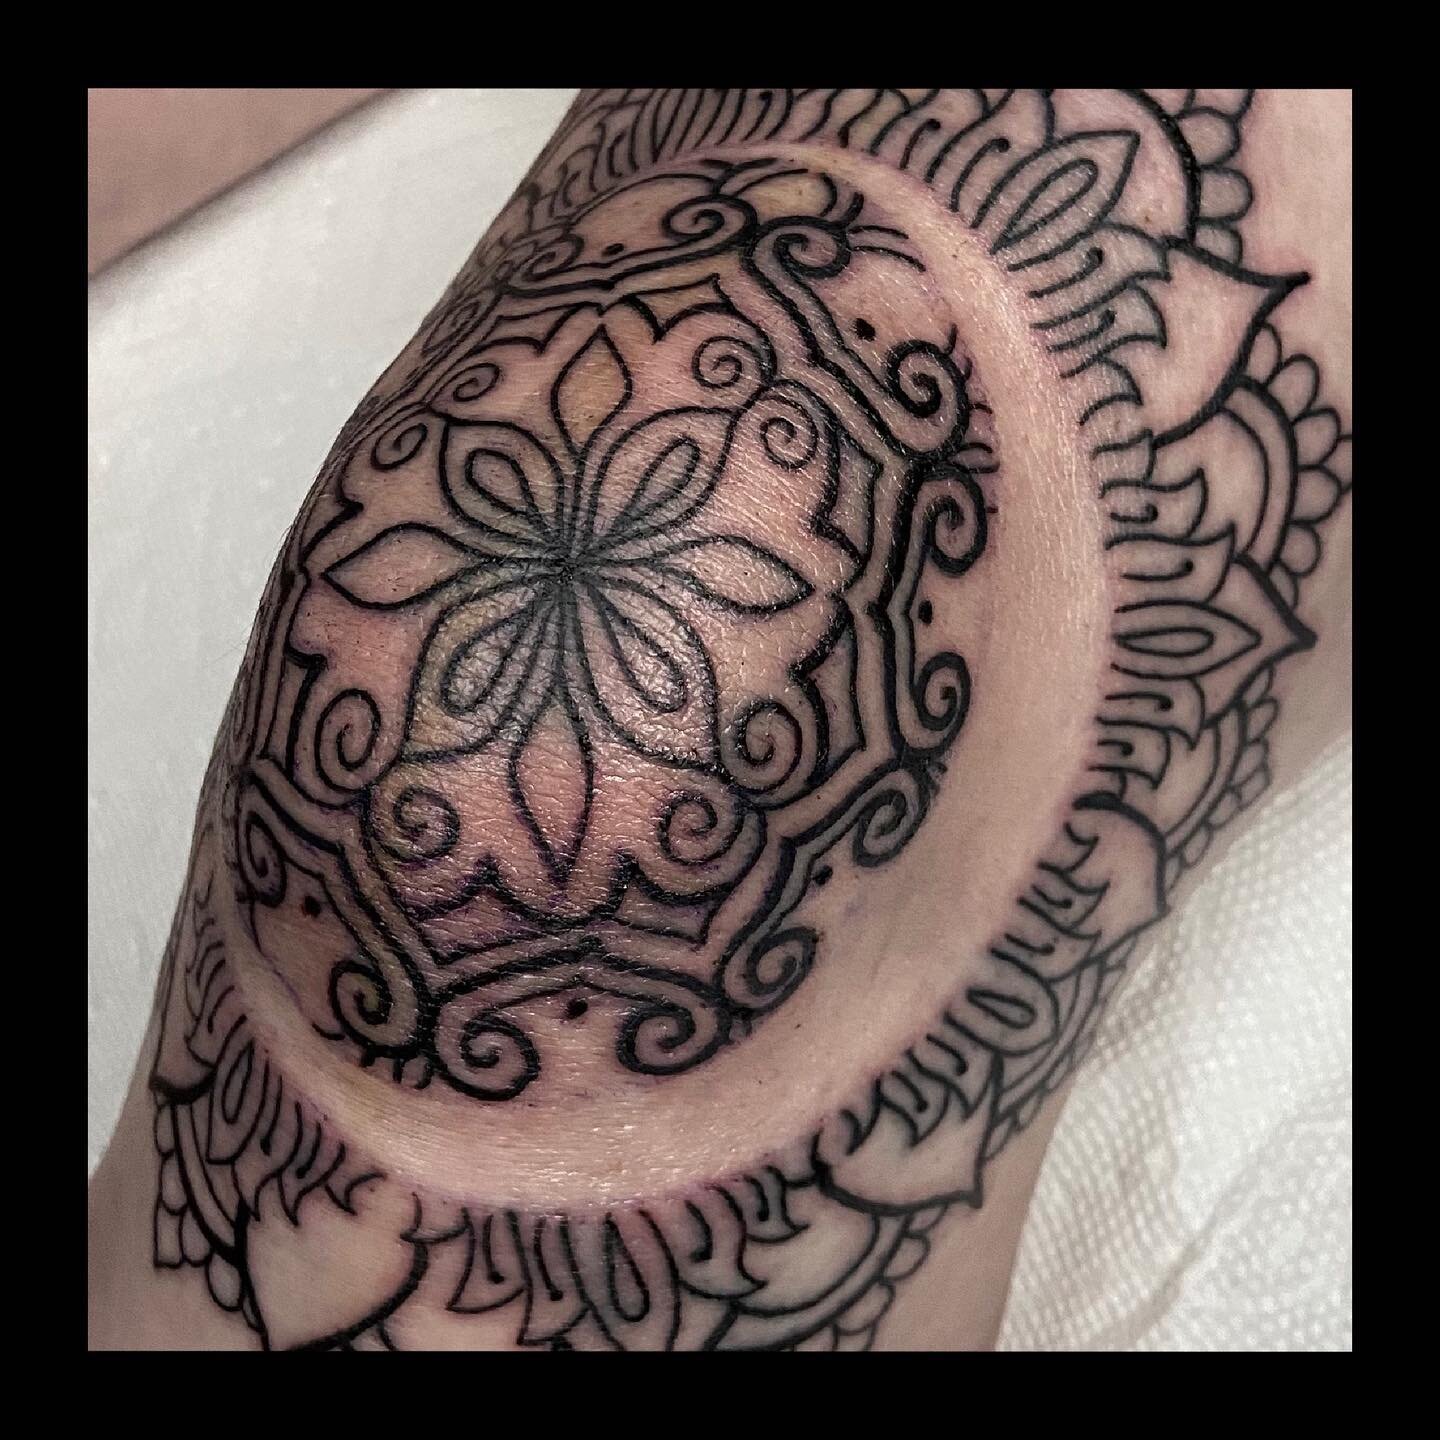 Artist: @dandunks_tattoo 
Shop: @intuitiontattoo 
Subject: Ornamental Knee
.
.
.

#ornamentaltattoo #geometric #geometrictattoo #dotwork #blackandgreytattoo #suicidegirls  #tattoo #tattoos #girlswithtattoos #guyswithtattoos #inked #cttattooshop #tatt